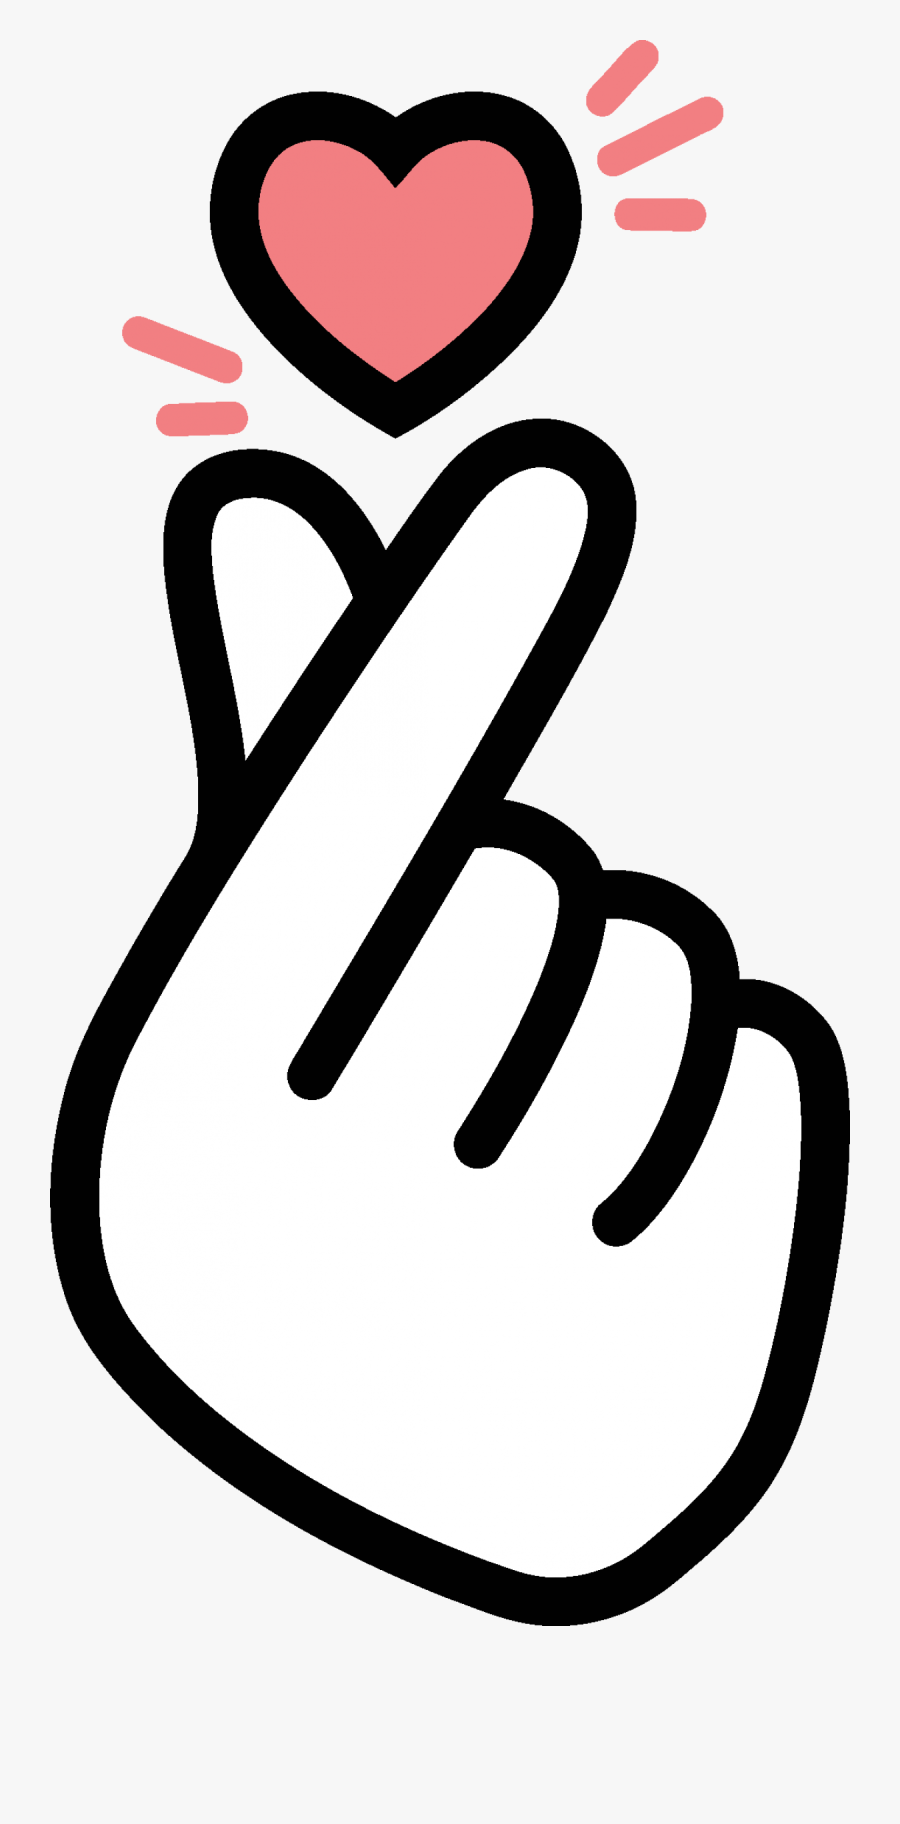 Korean Finger Heart Transparent Png Image Transparent Png Free | The ...